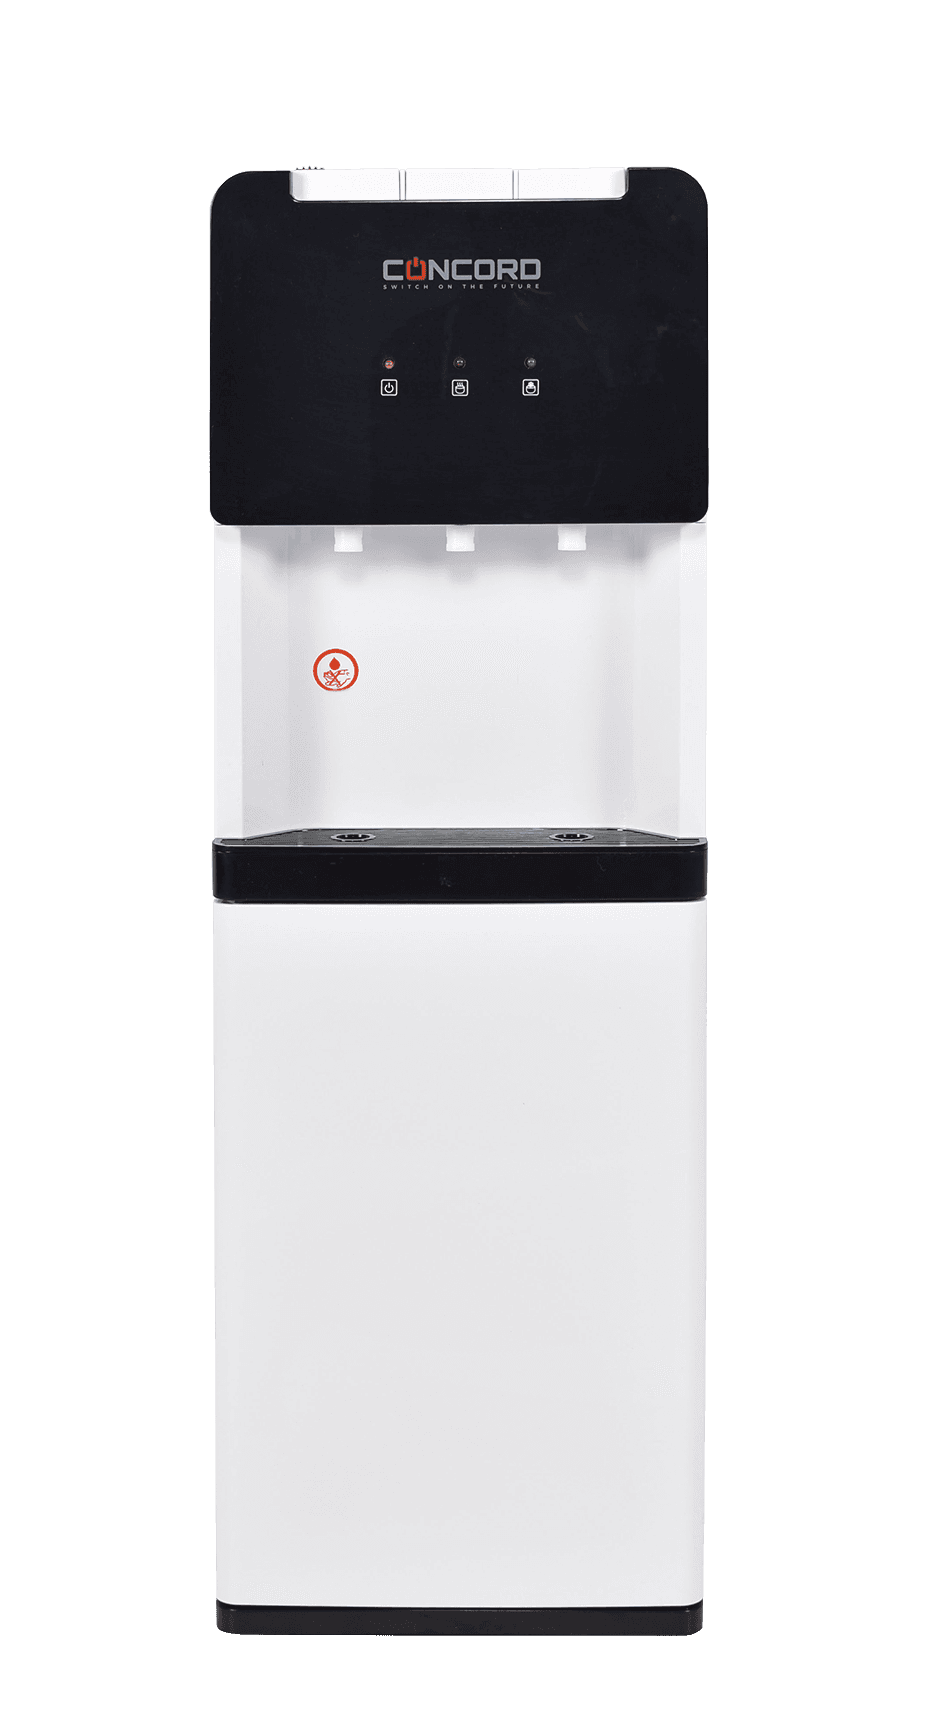 Concord Water Dispenser - 109 Economic Size - Silver/Black